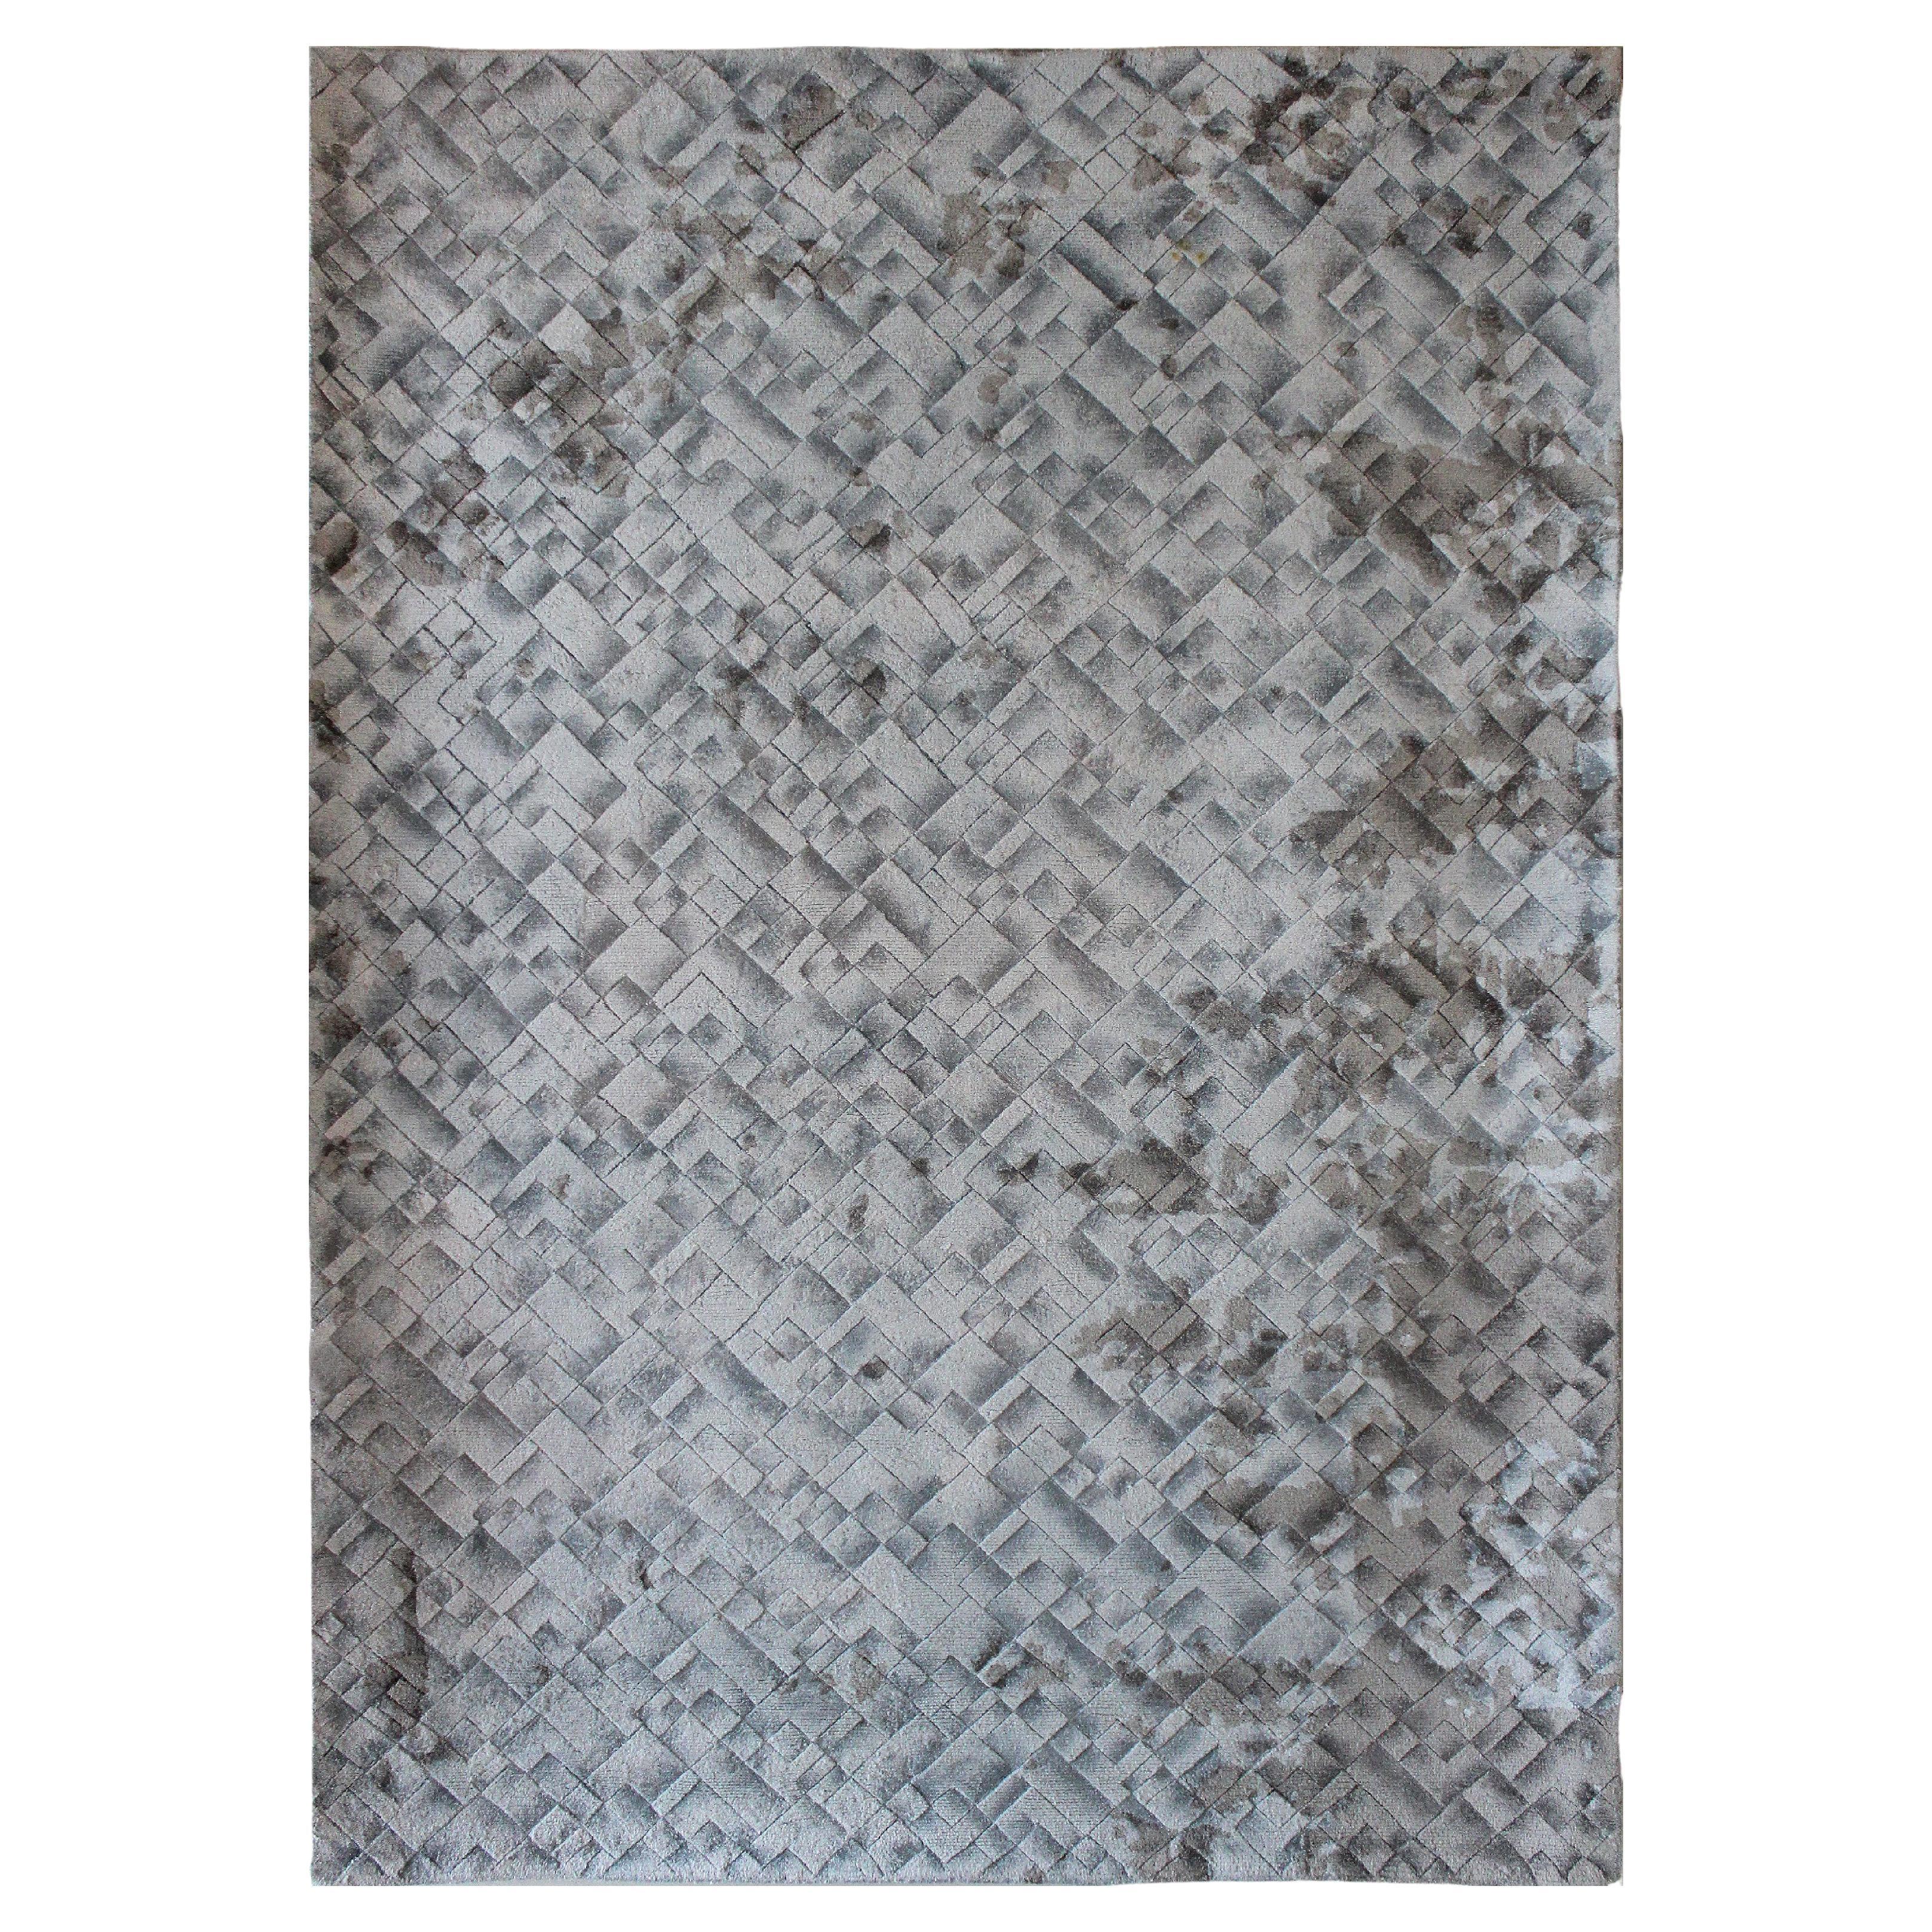 FLUVIAL - Tapis en soie moderne abstrait touffeté à la main, couleur gris ciel, fait main